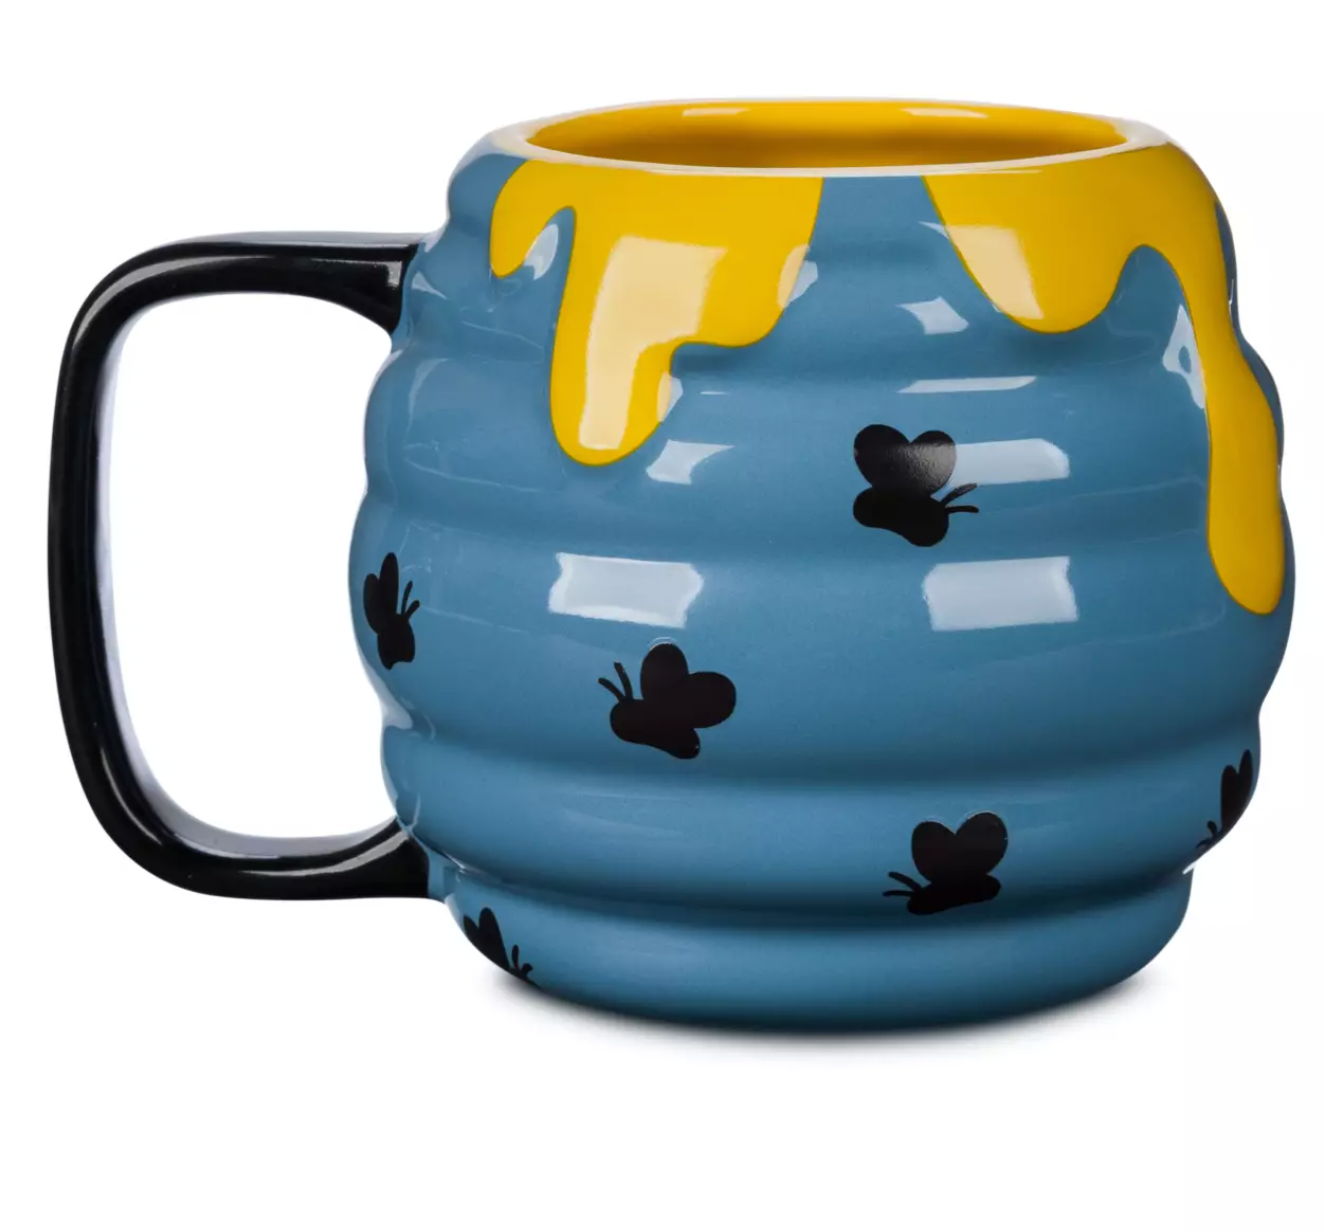 Disney Winnie the Pooh Bee Hunny Pot Shape Coffee Mug New